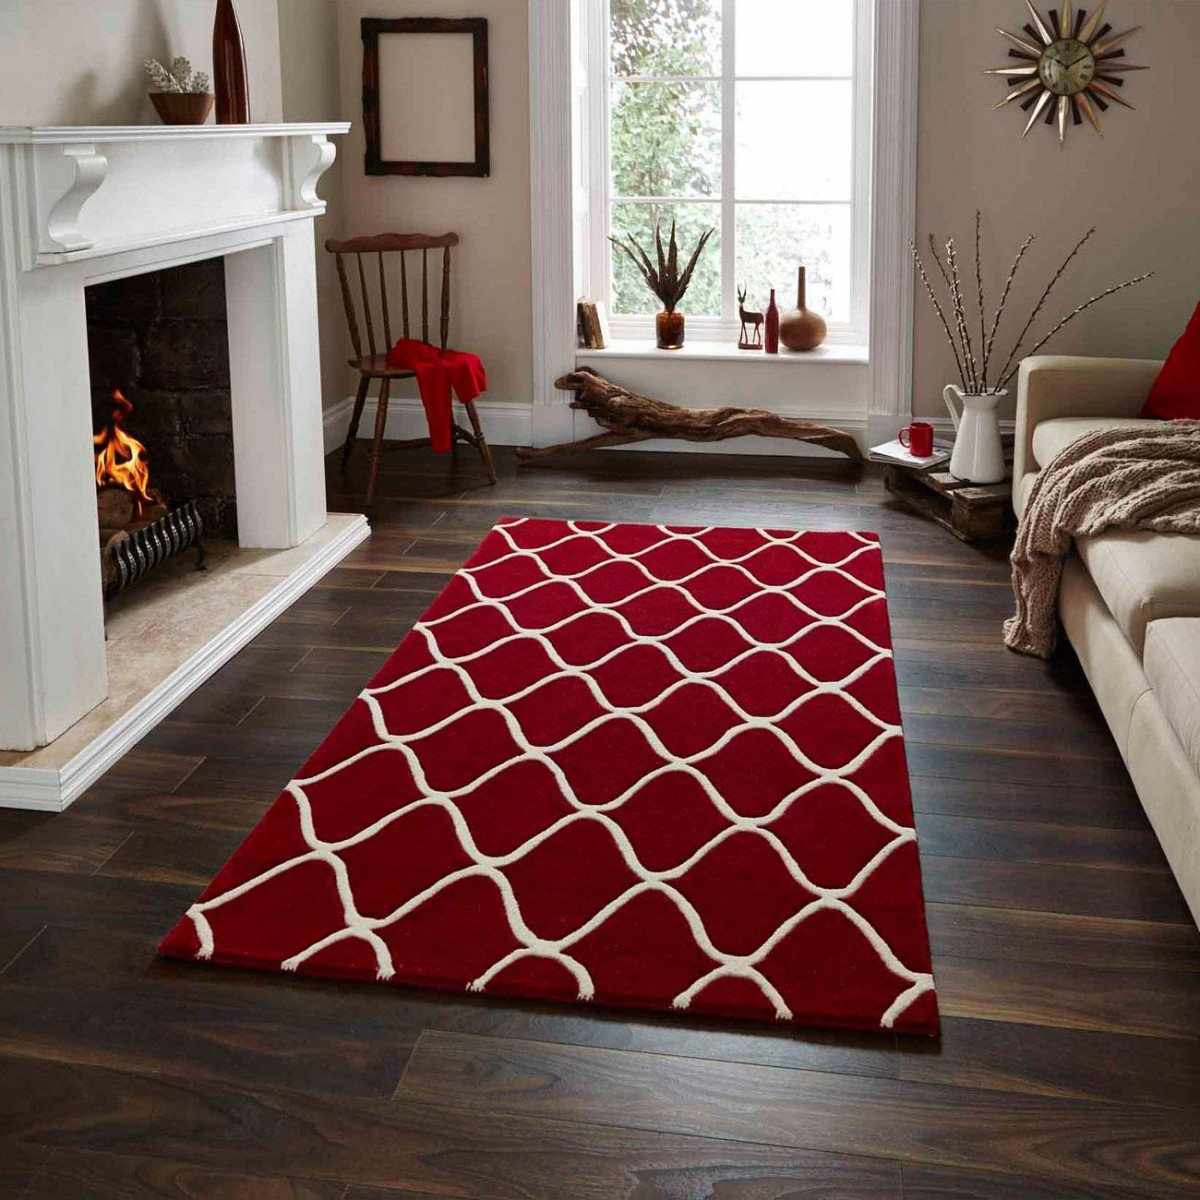 Интерьер с ковром